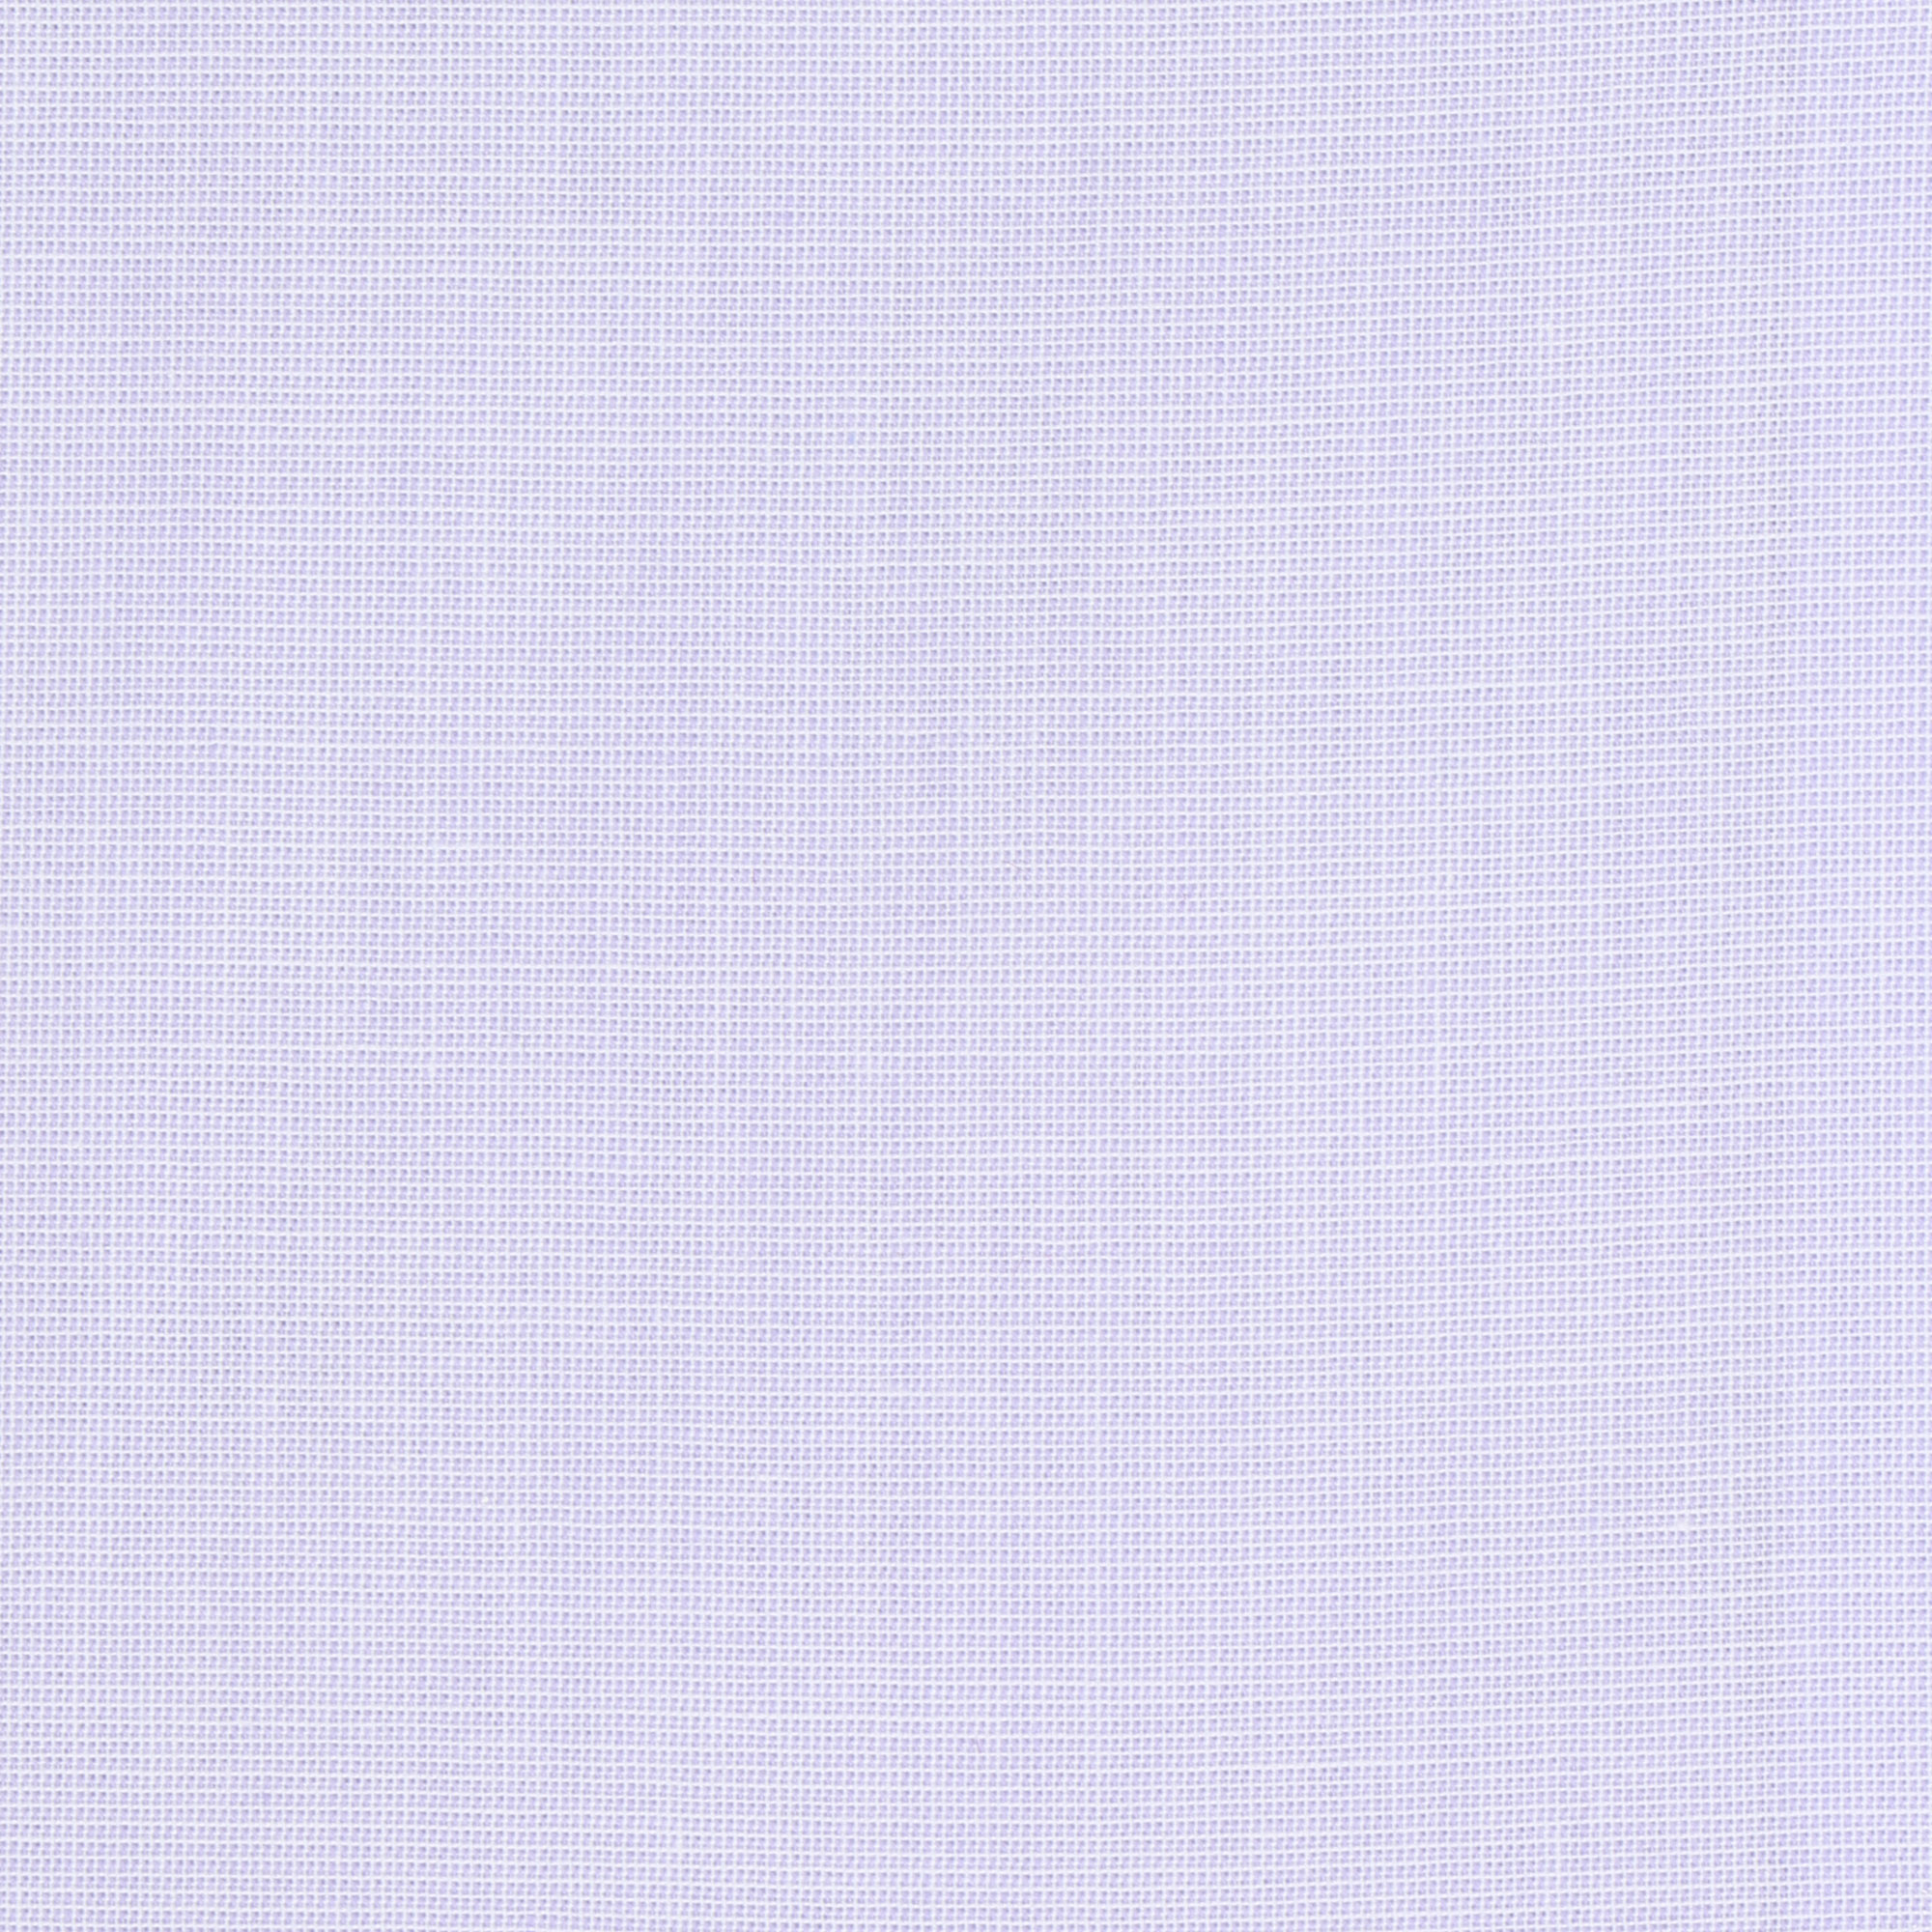 Сорочка классическая Vester 70715 43C 182-188, цвет лавандовый, размер 43C 182-188 - фото 5